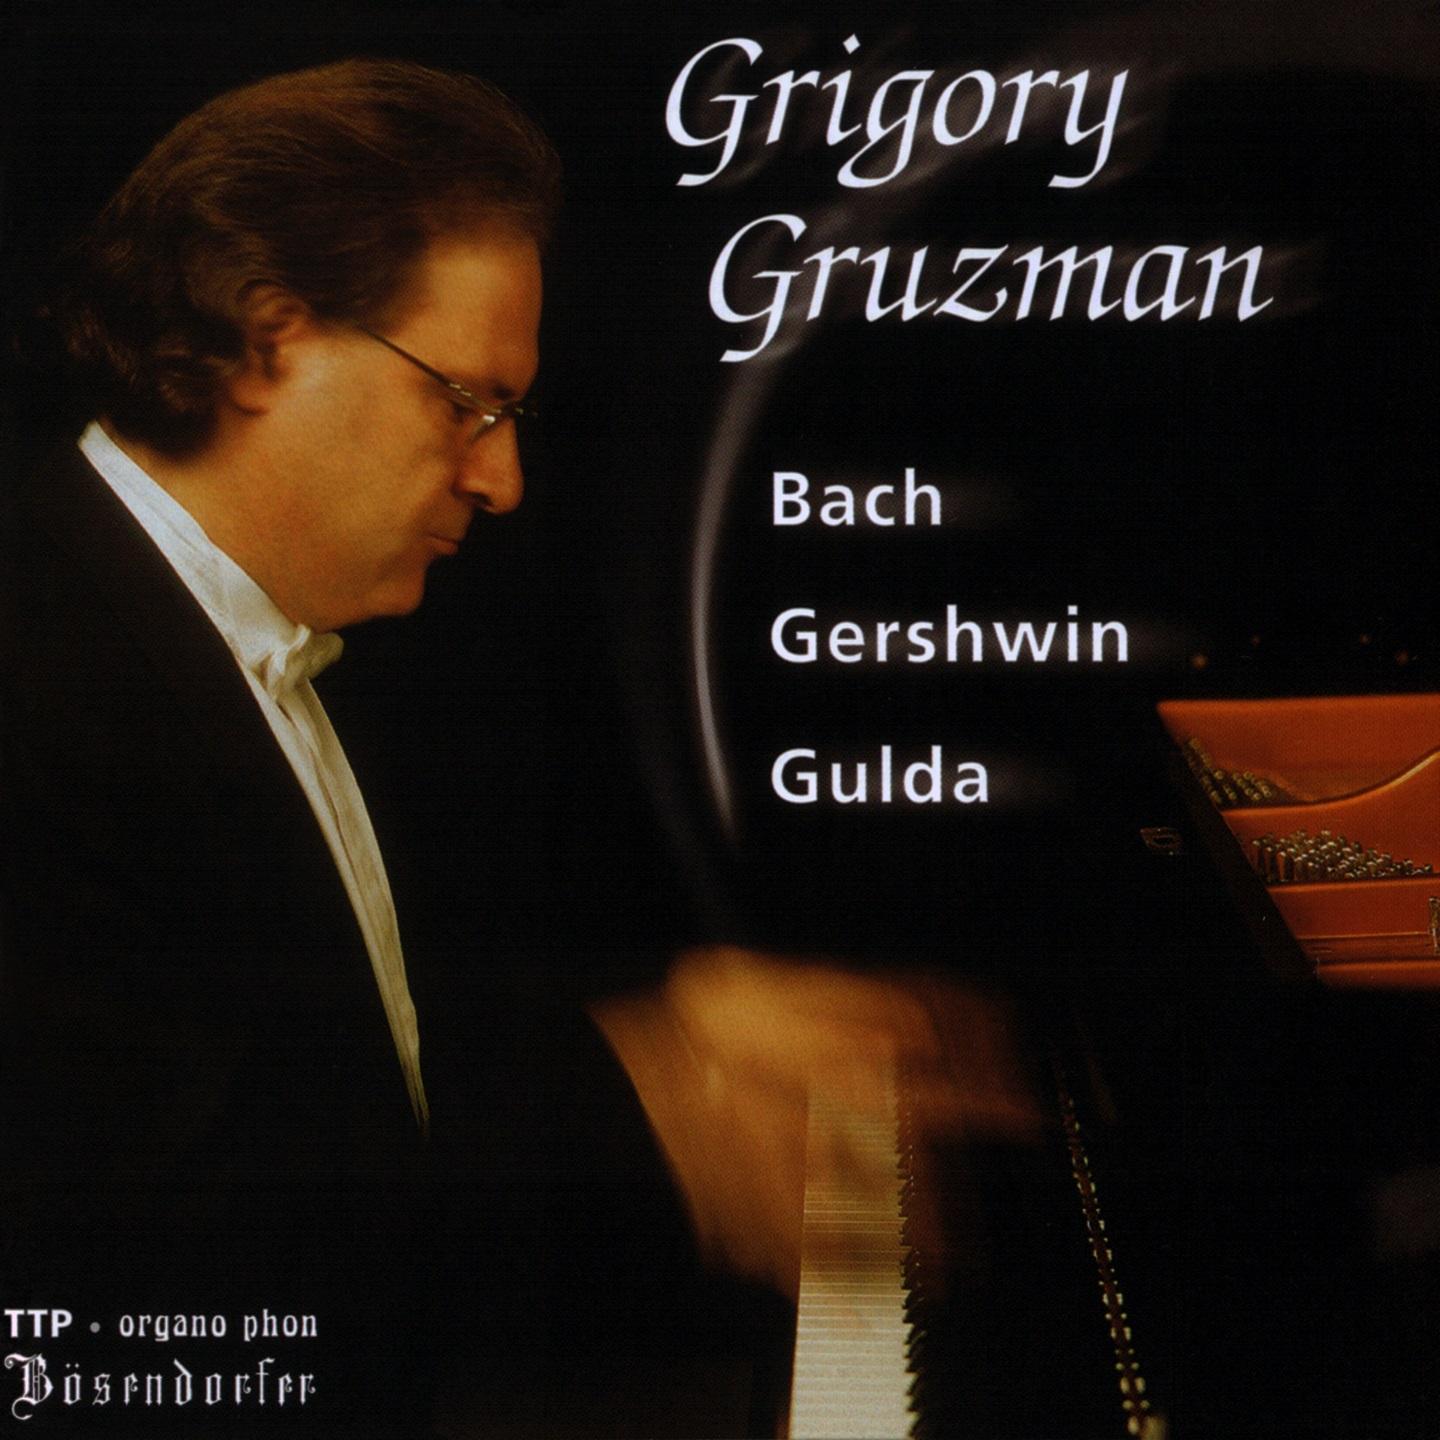 Grigory Gruzman: Bach, Gershwin, Gulda